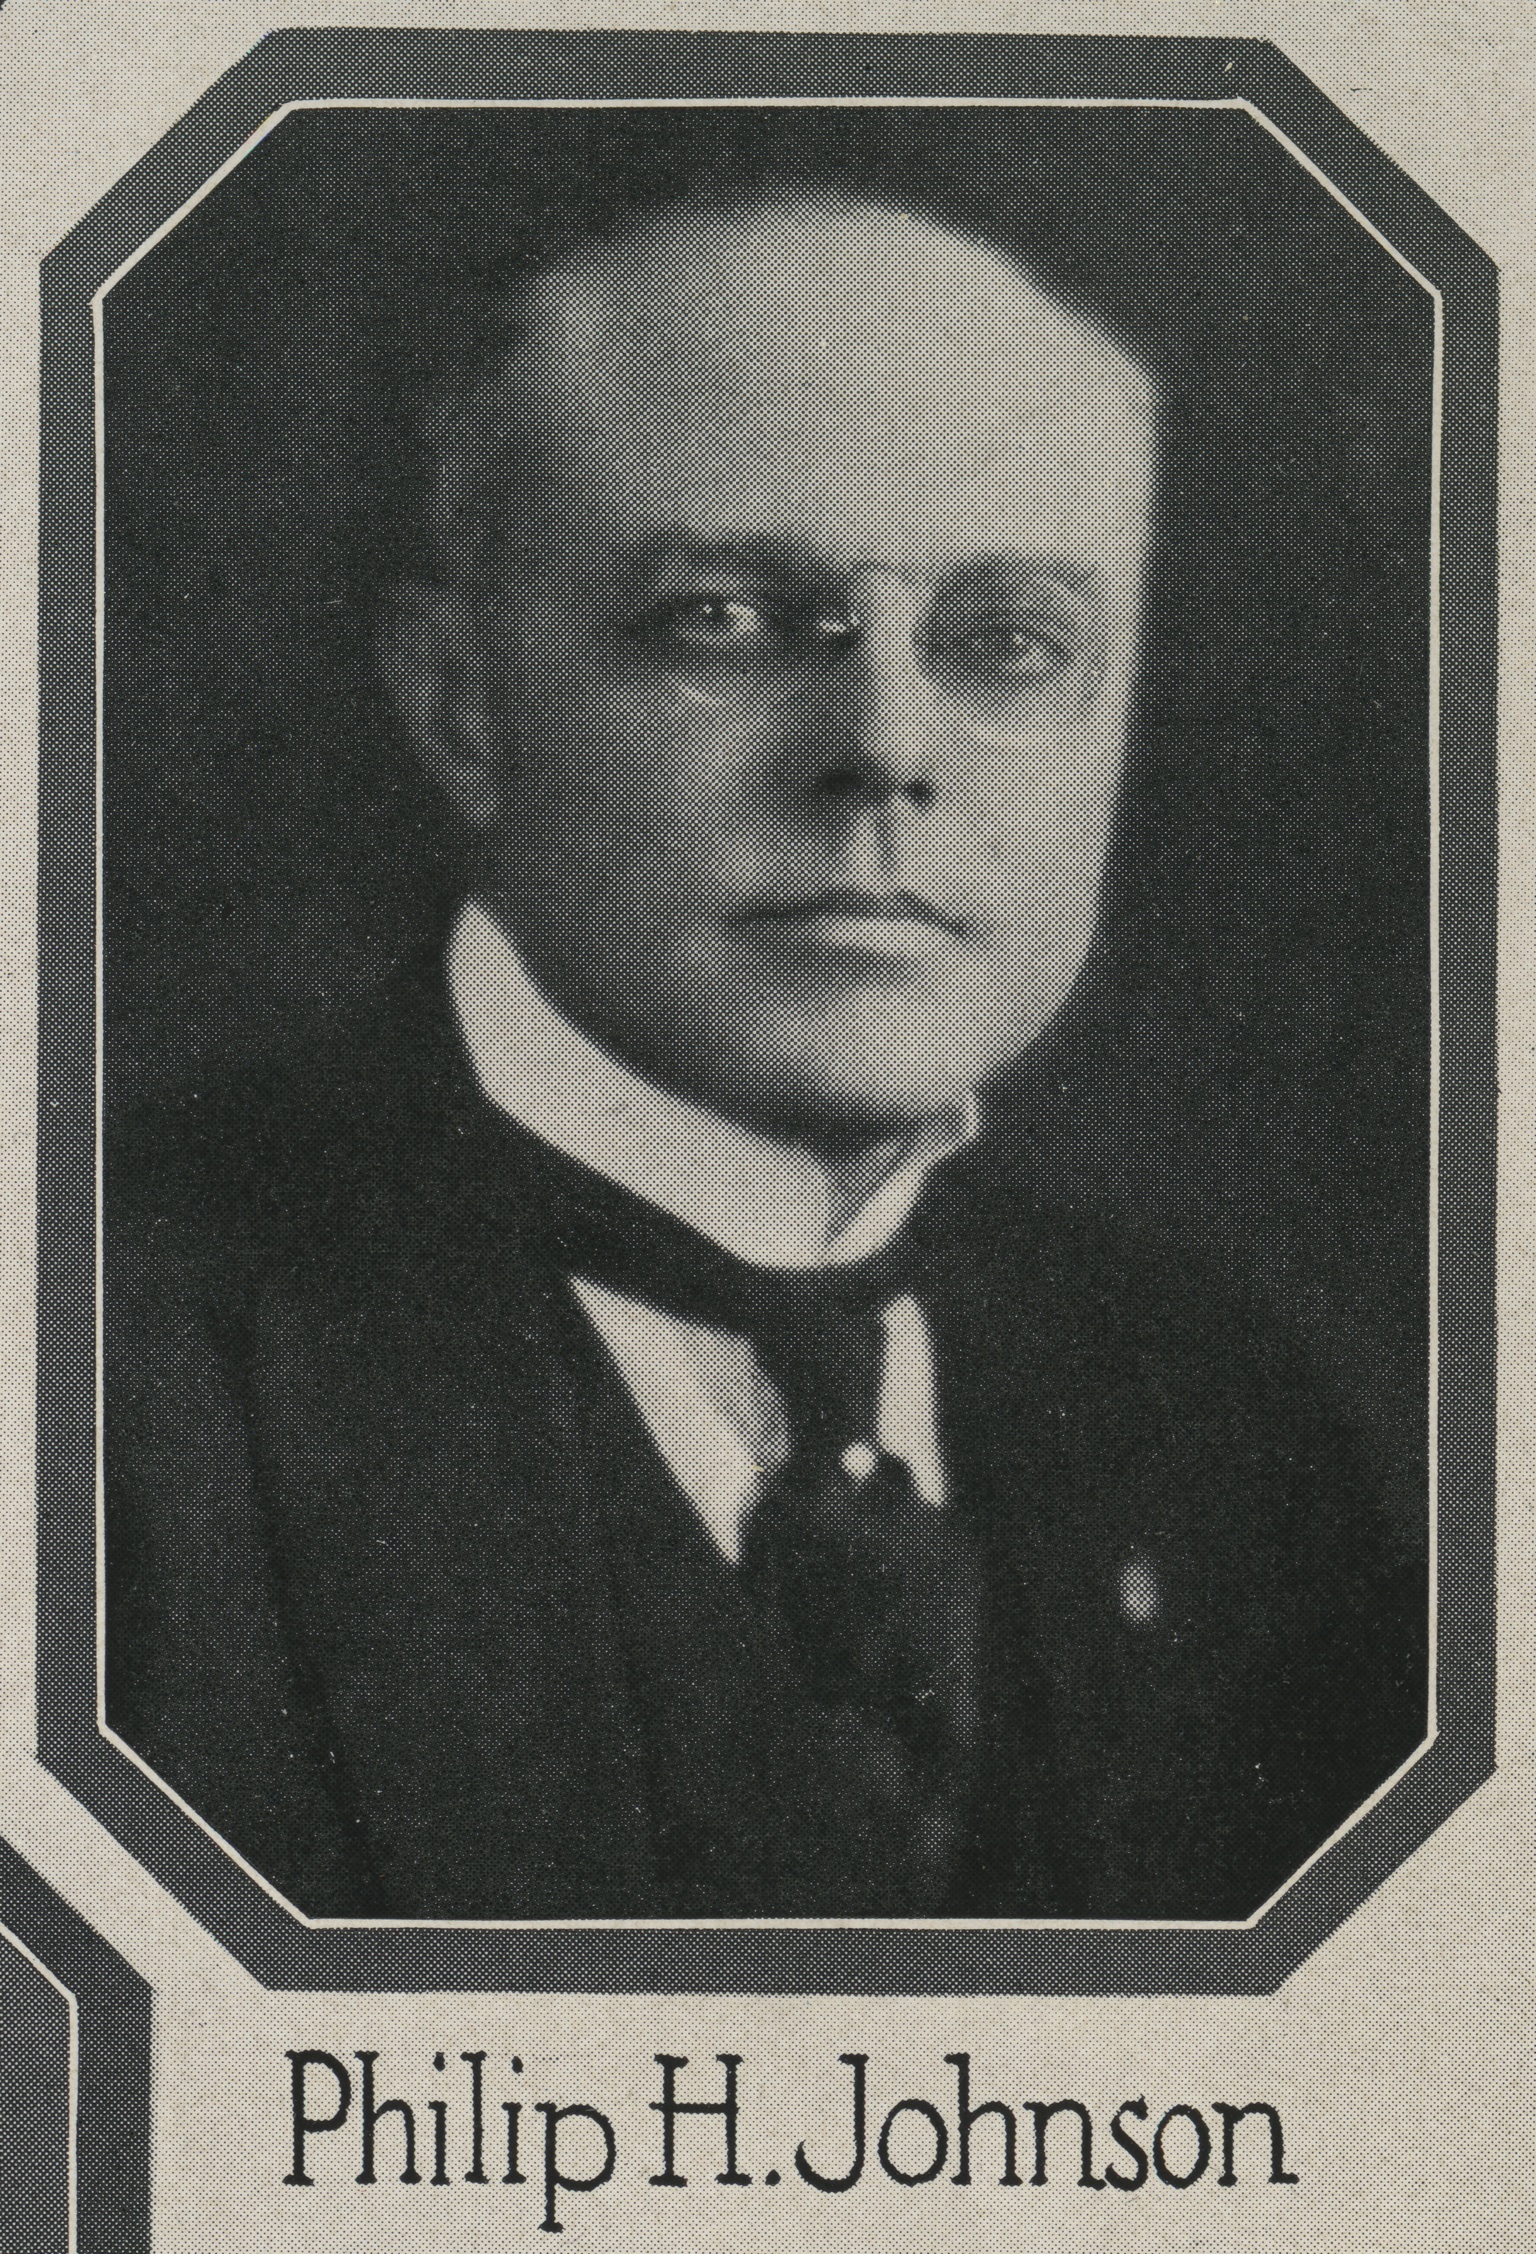 Philip H. Johnson